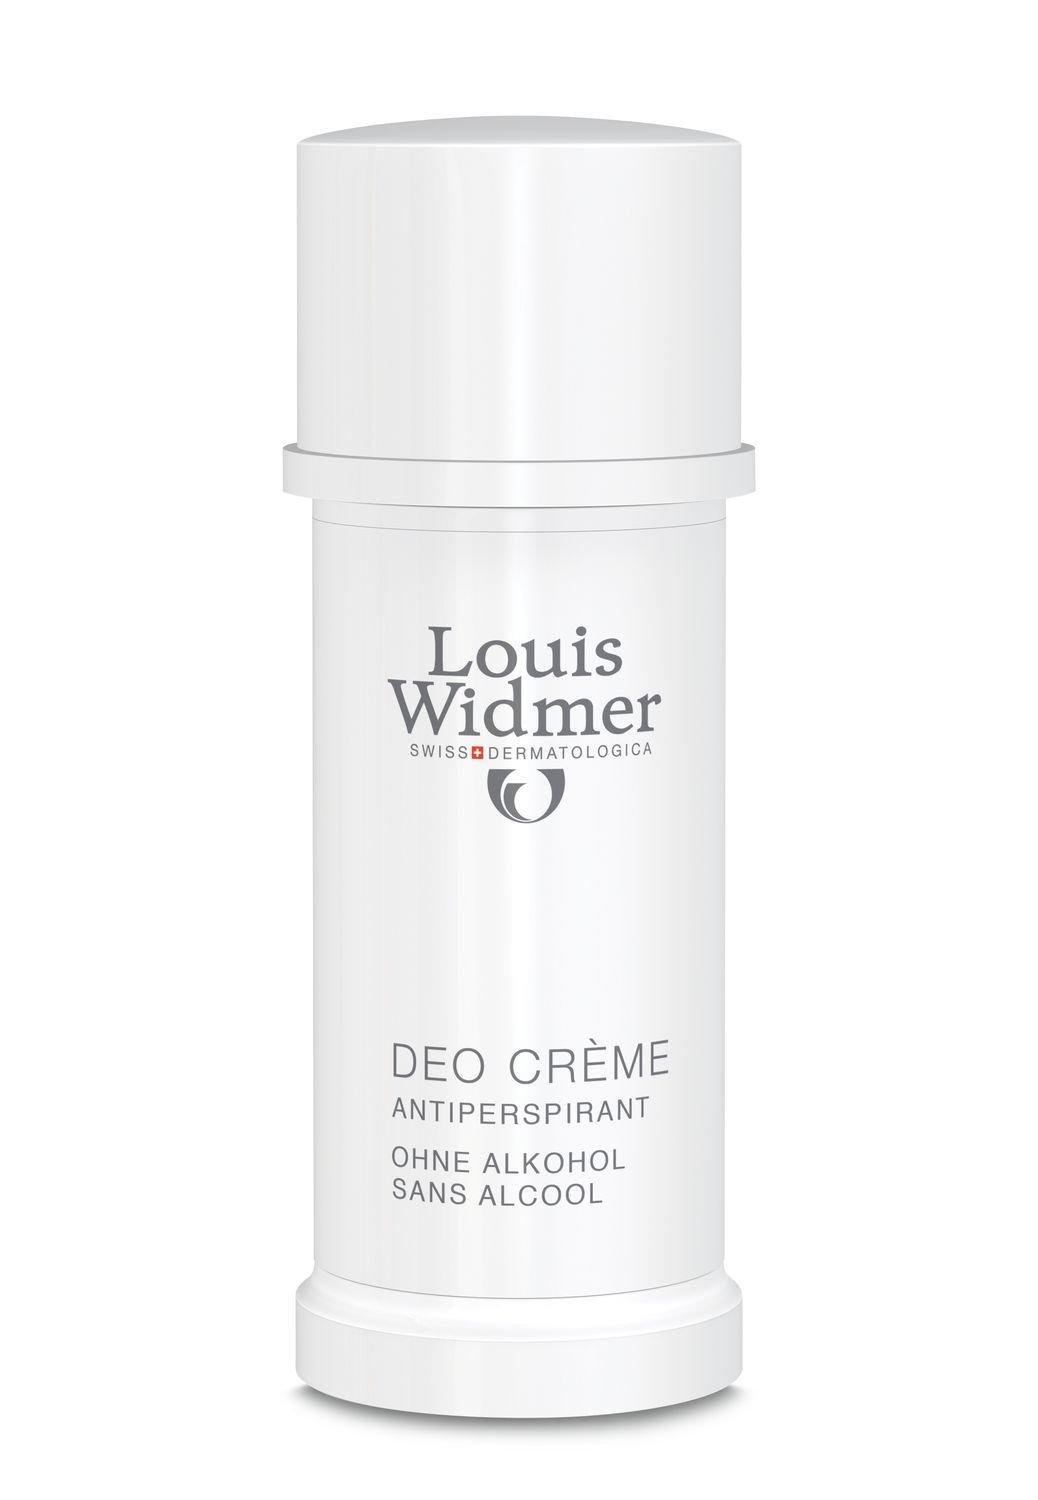 Image of Louis Widmer Deo Creme parfümiert - 40ml